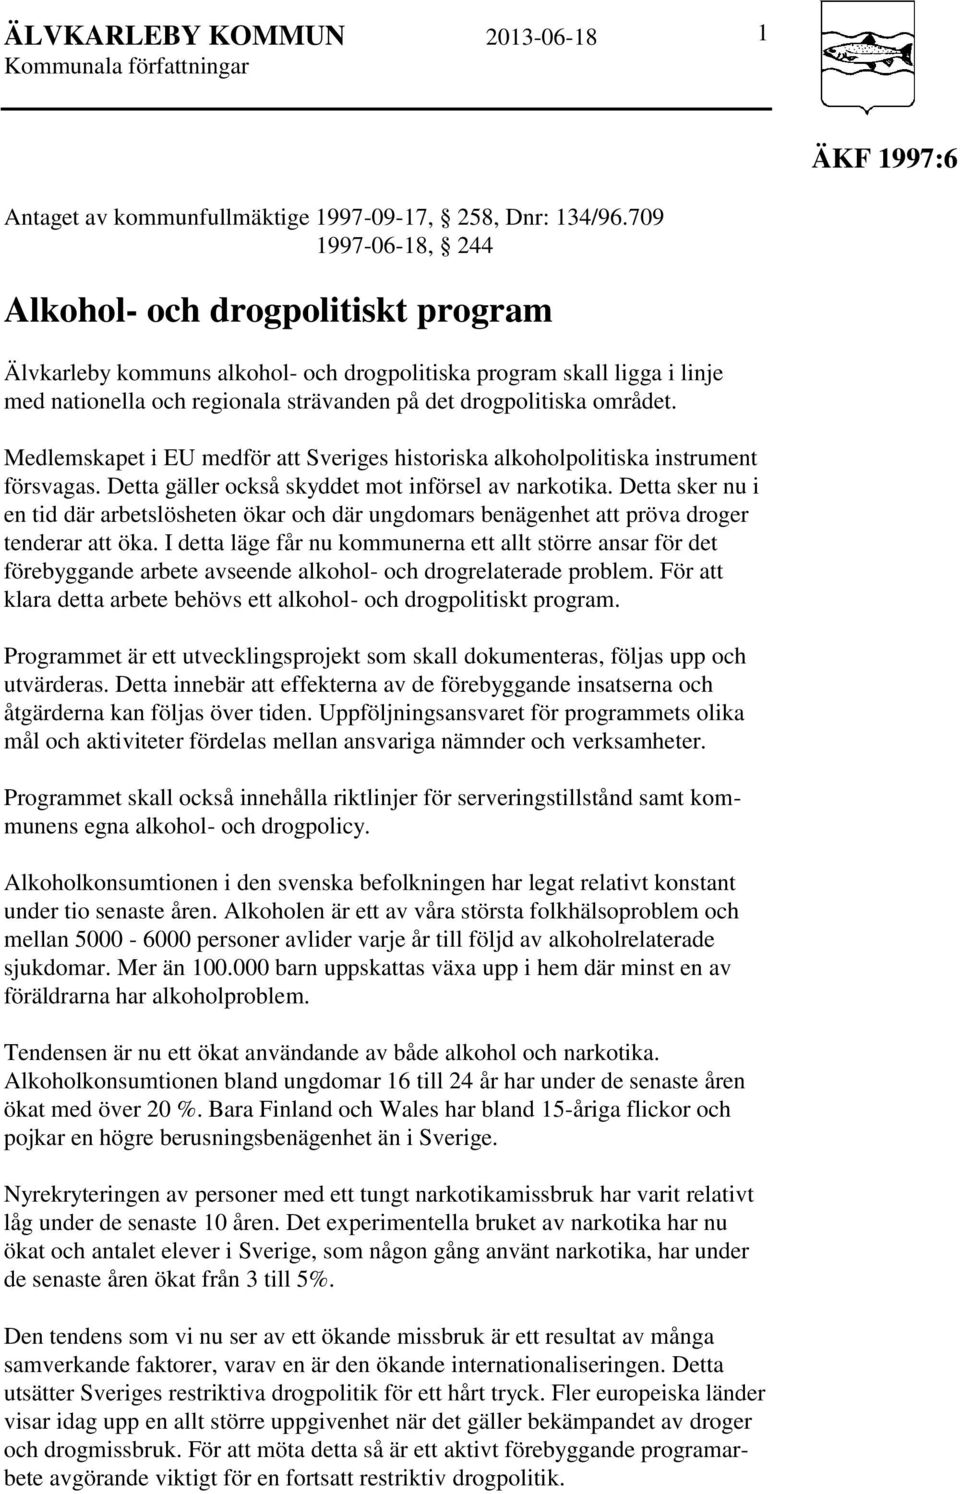 Medlemskapet i EU medför att Sveriges historiska alkoholpolitiska instrument försvagas. Detta gäller också skyddet mot införsel av narkotika.